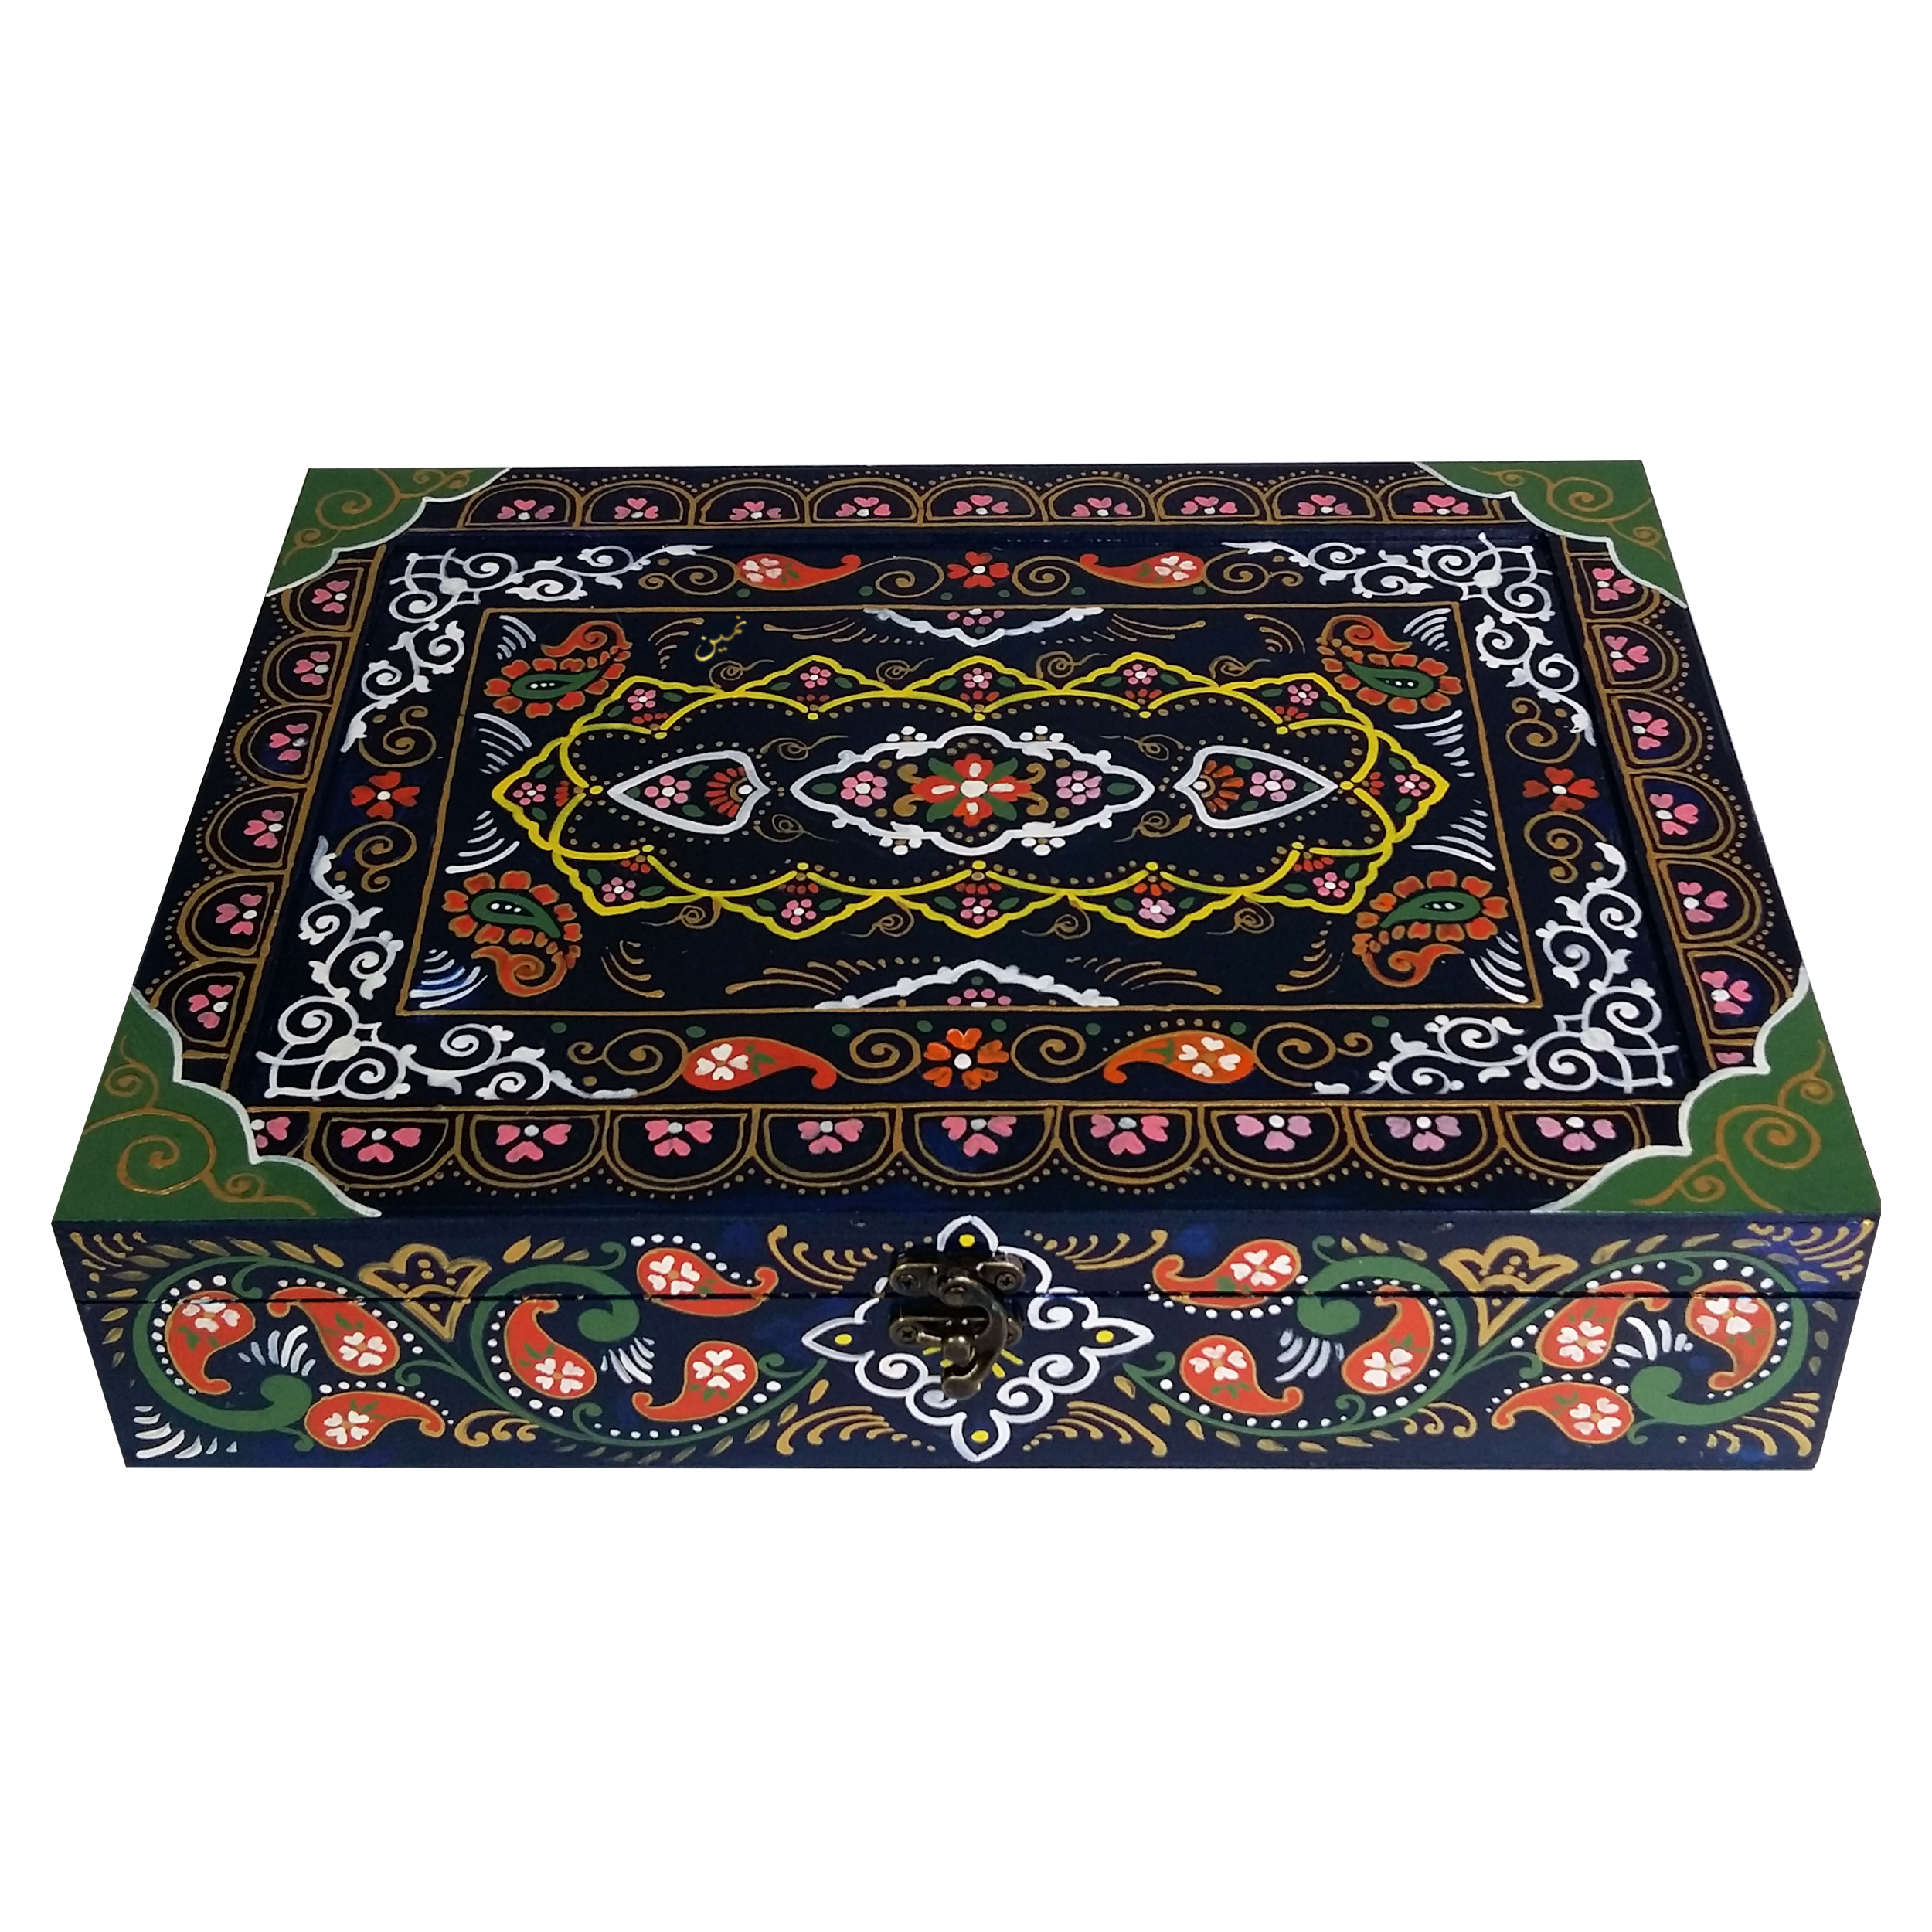 جعبه چای کیسه ای مدل نقش فرش گل و ترمه کاشان